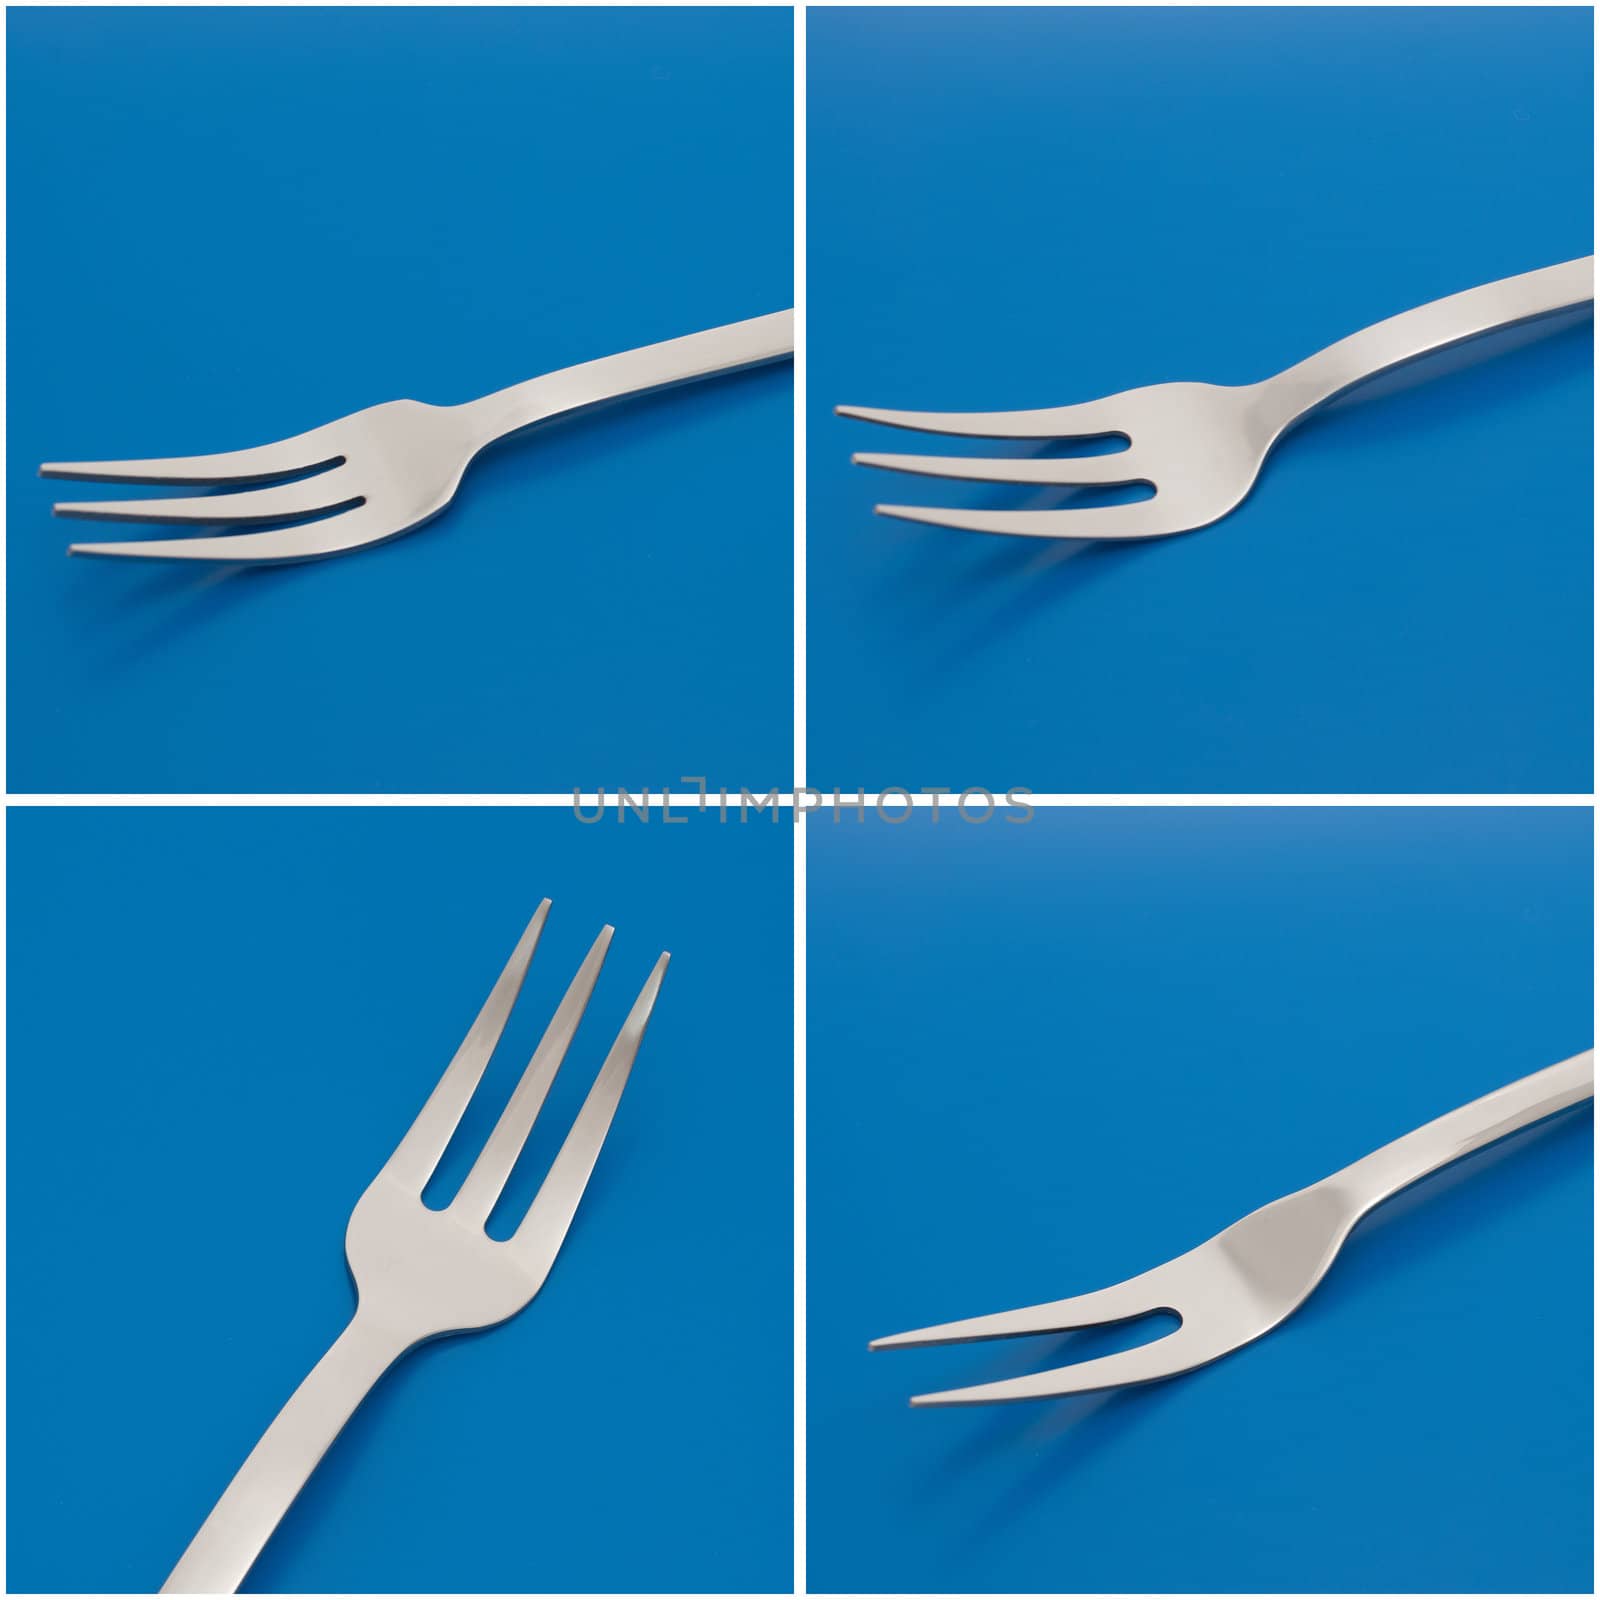 Set of forks on the blue background.